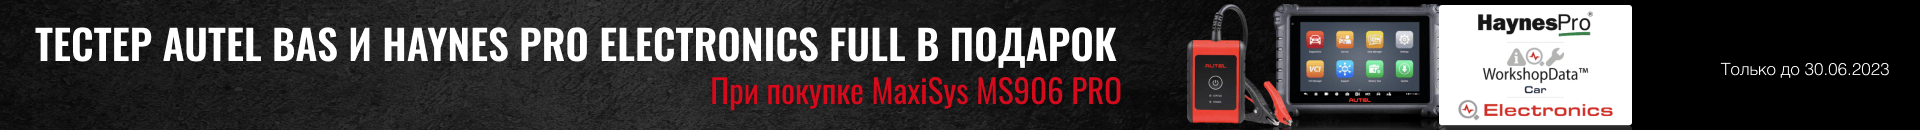 При покупке нового автосканера MaxiSys MS906 PRO бесплатно в комплекте с прибором поставляется тестер системы энергообеспечения MaxiBAS BT506.